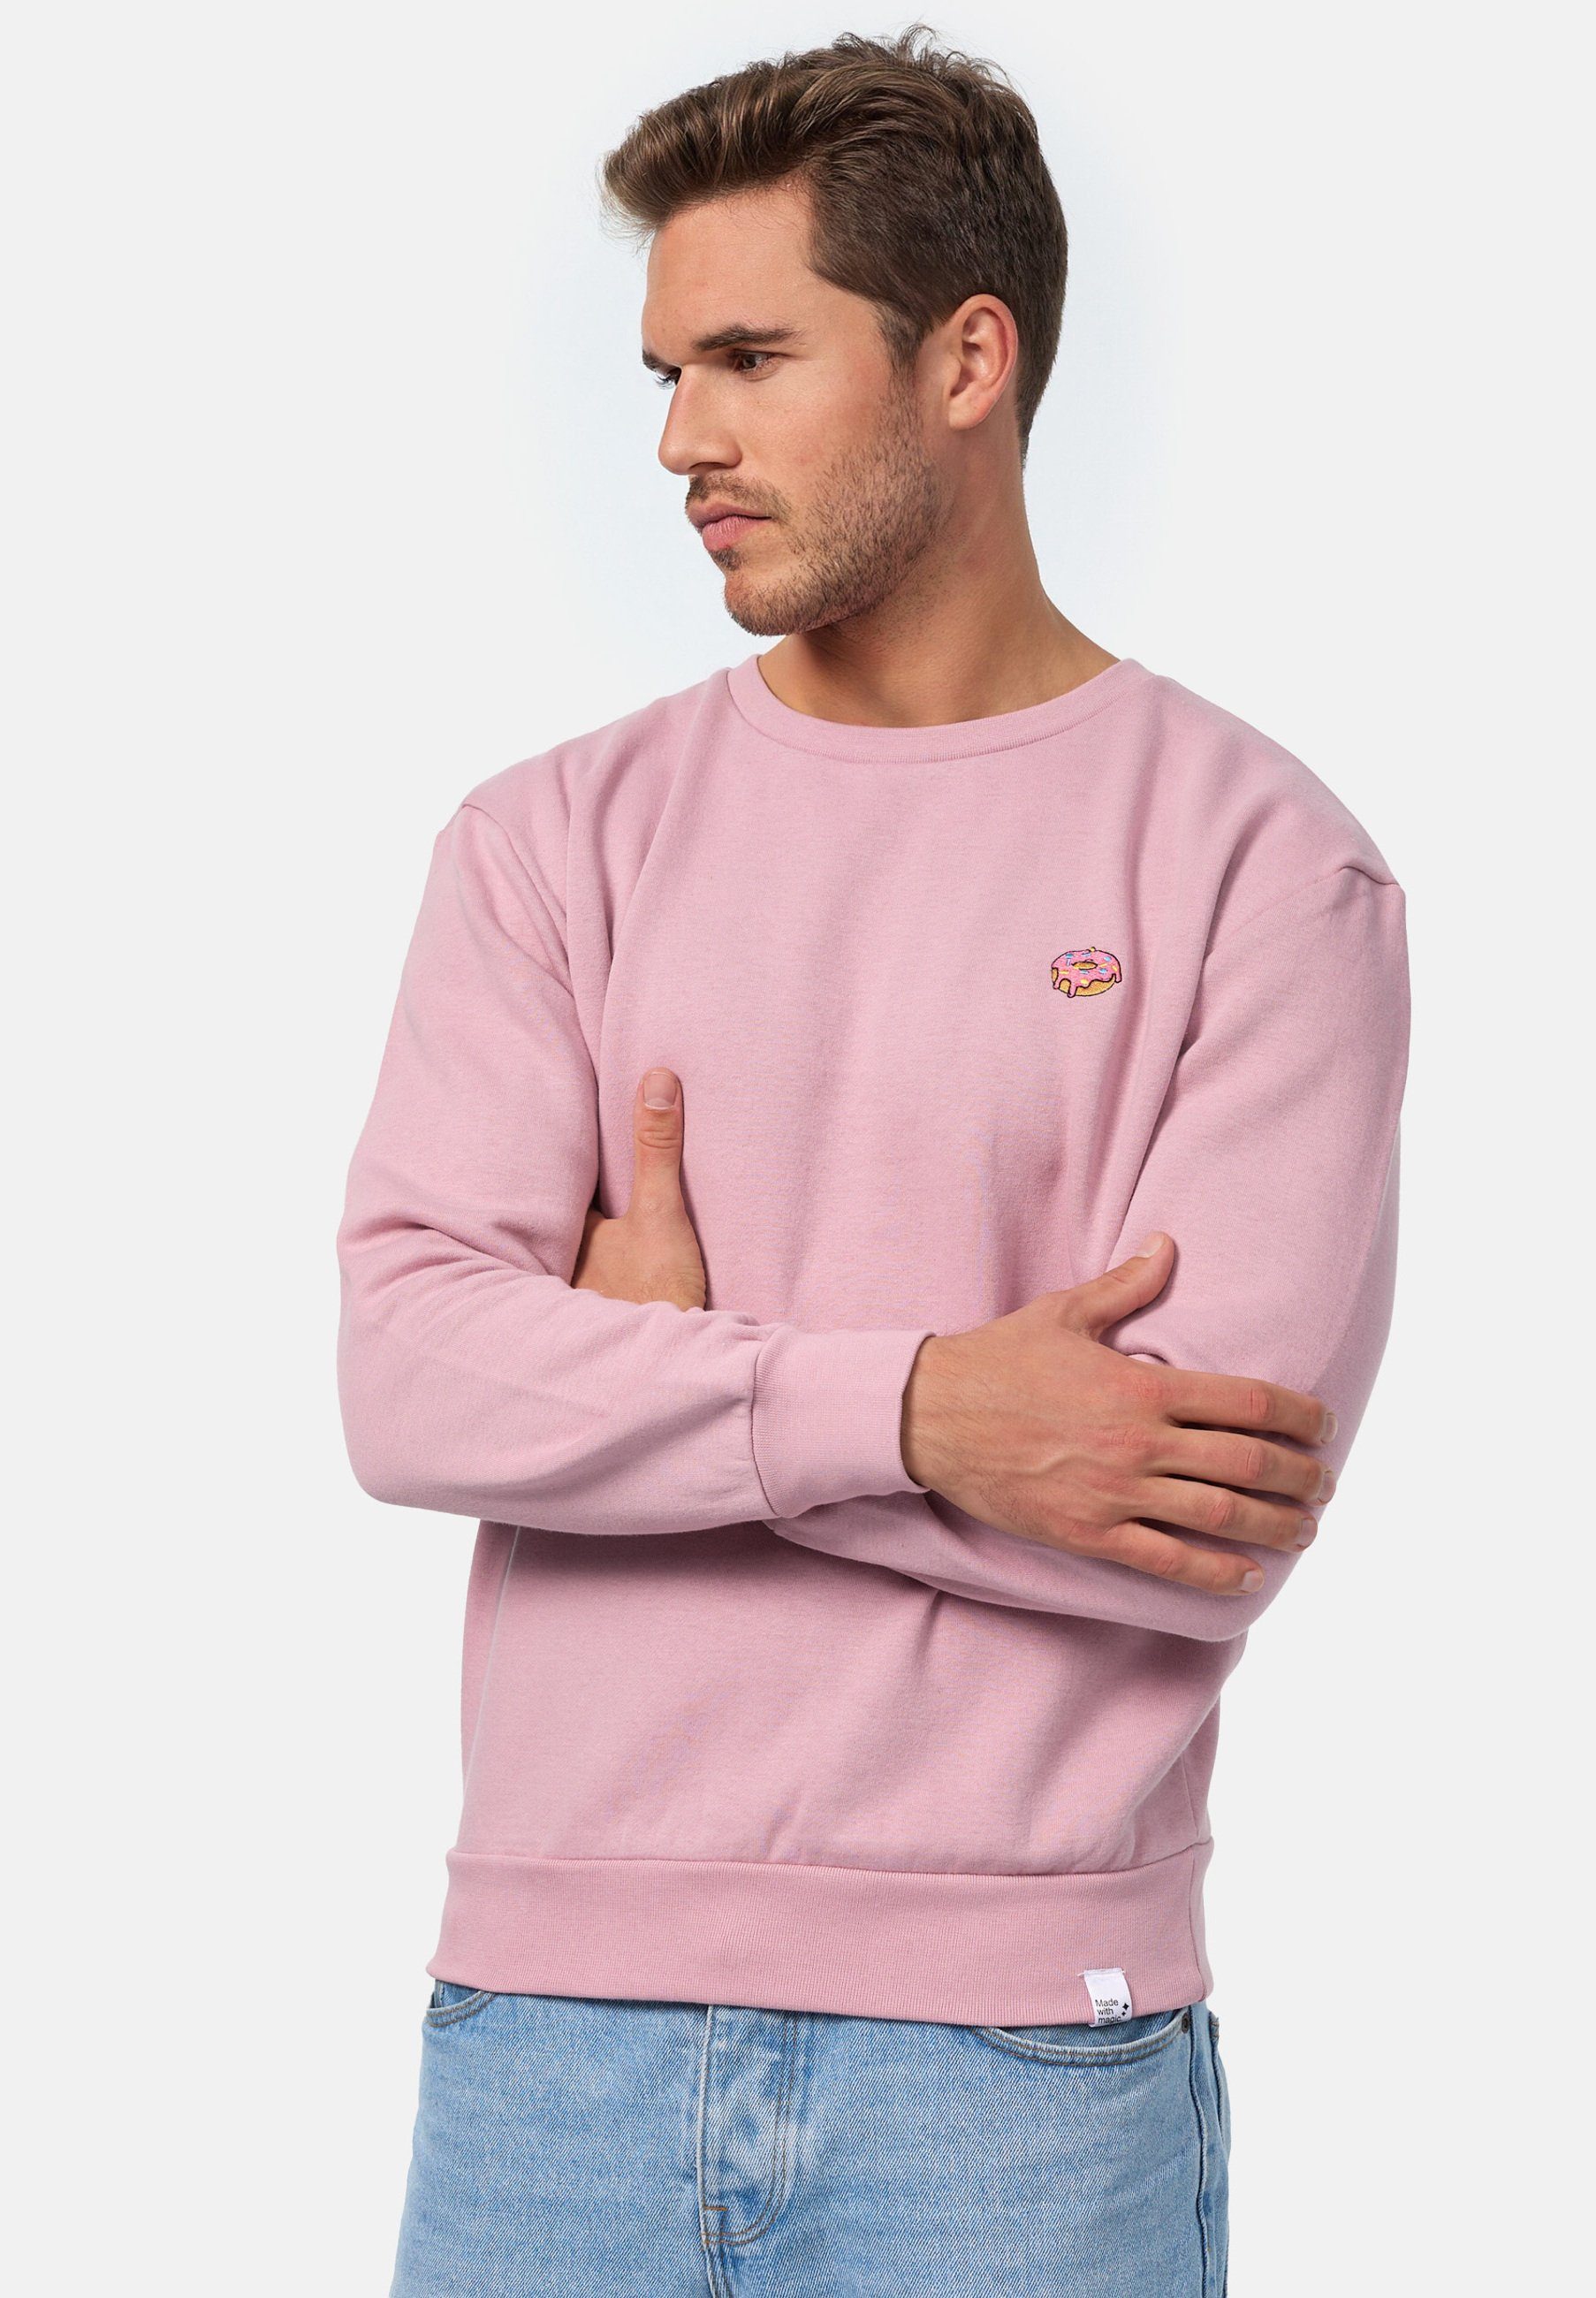 MIKON Sweatshirt Pink Bio-Baumwolle GOTS zertifizierte Donut